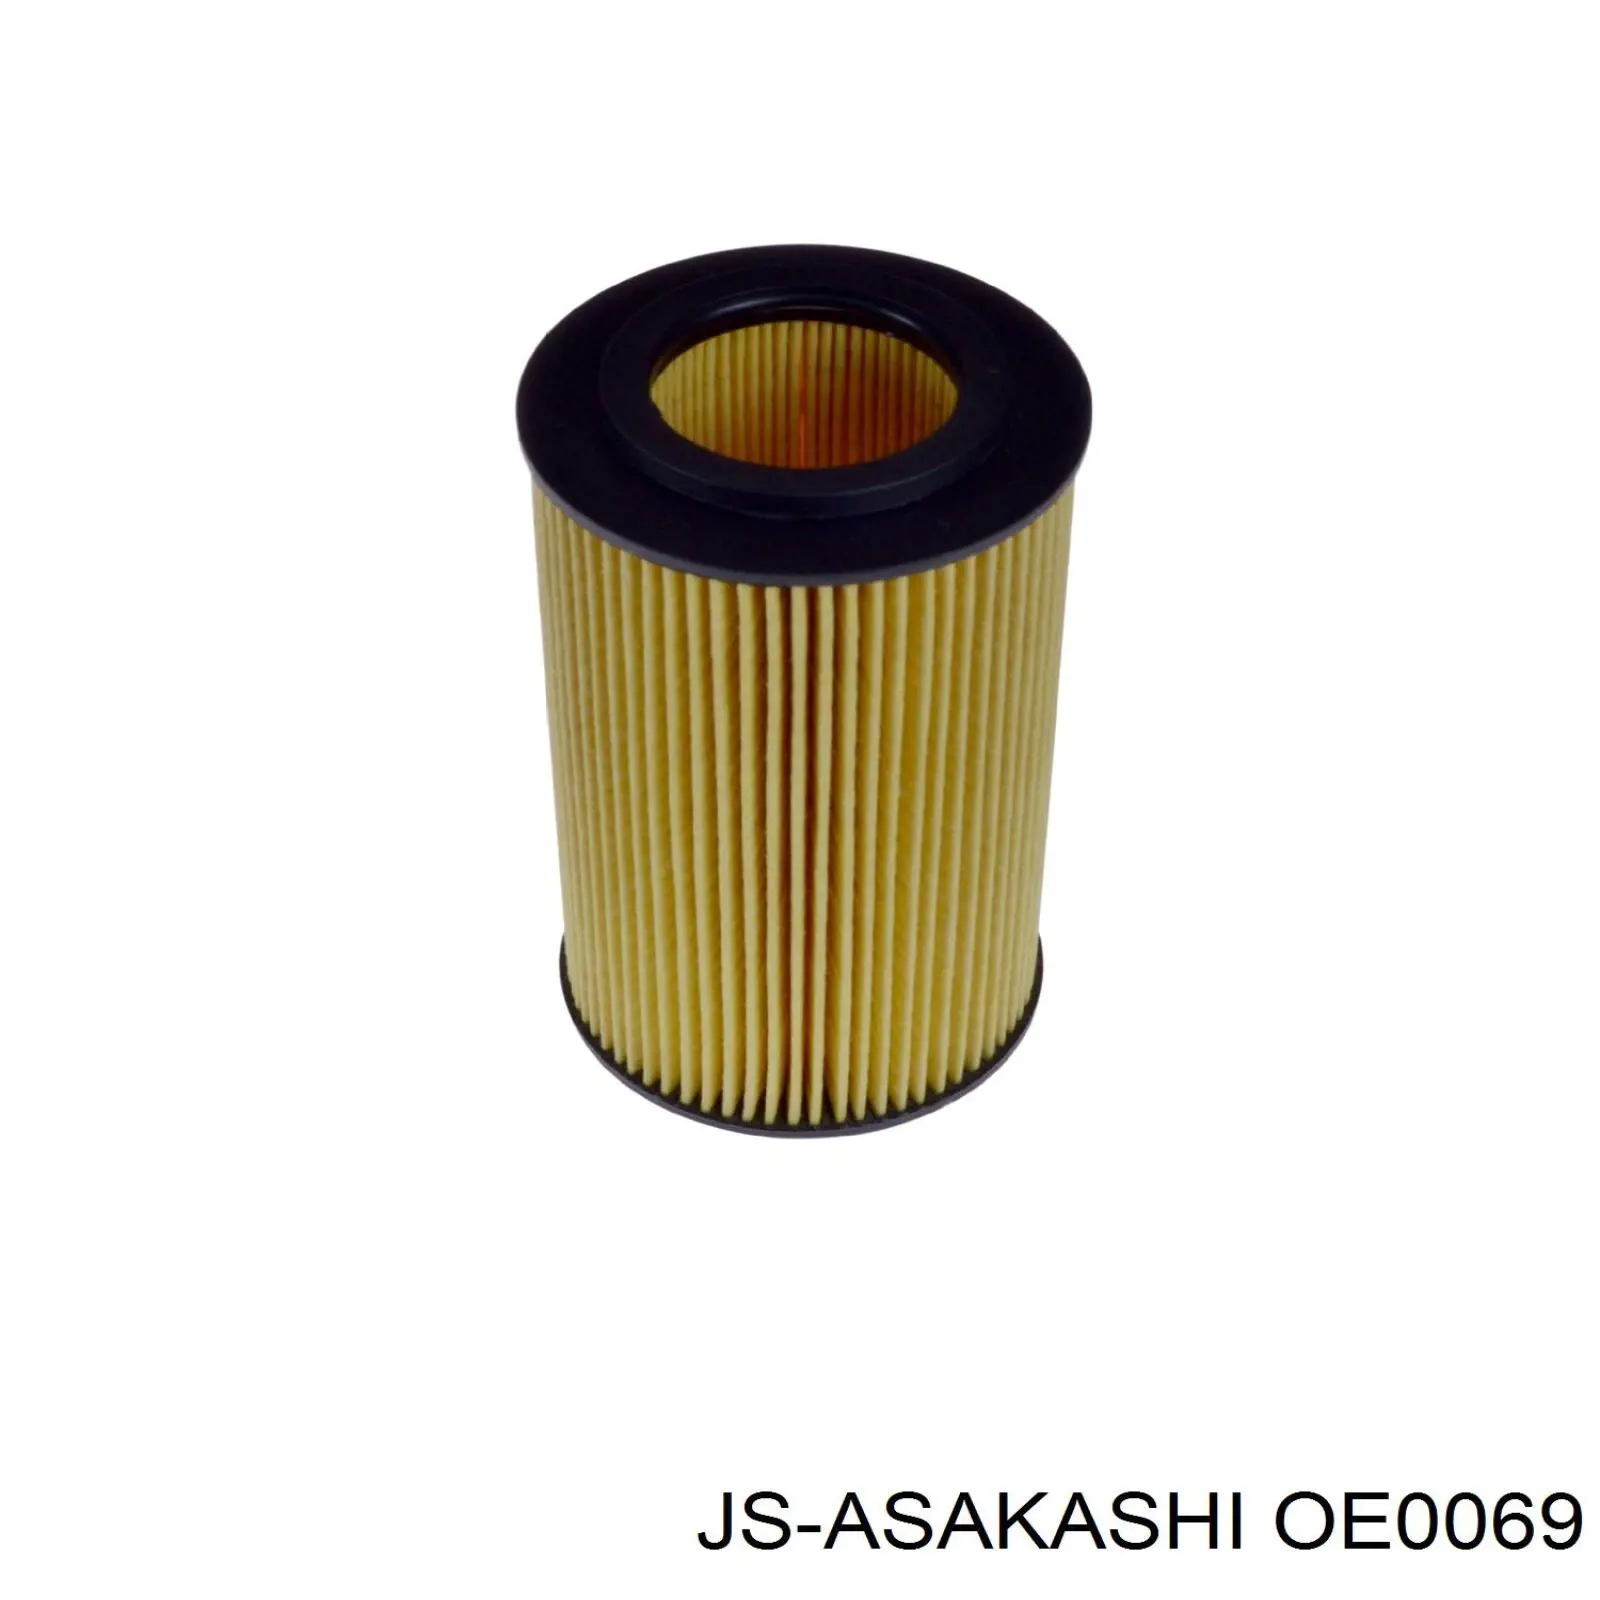 OE0069 JS Asakashi filtro de aceite